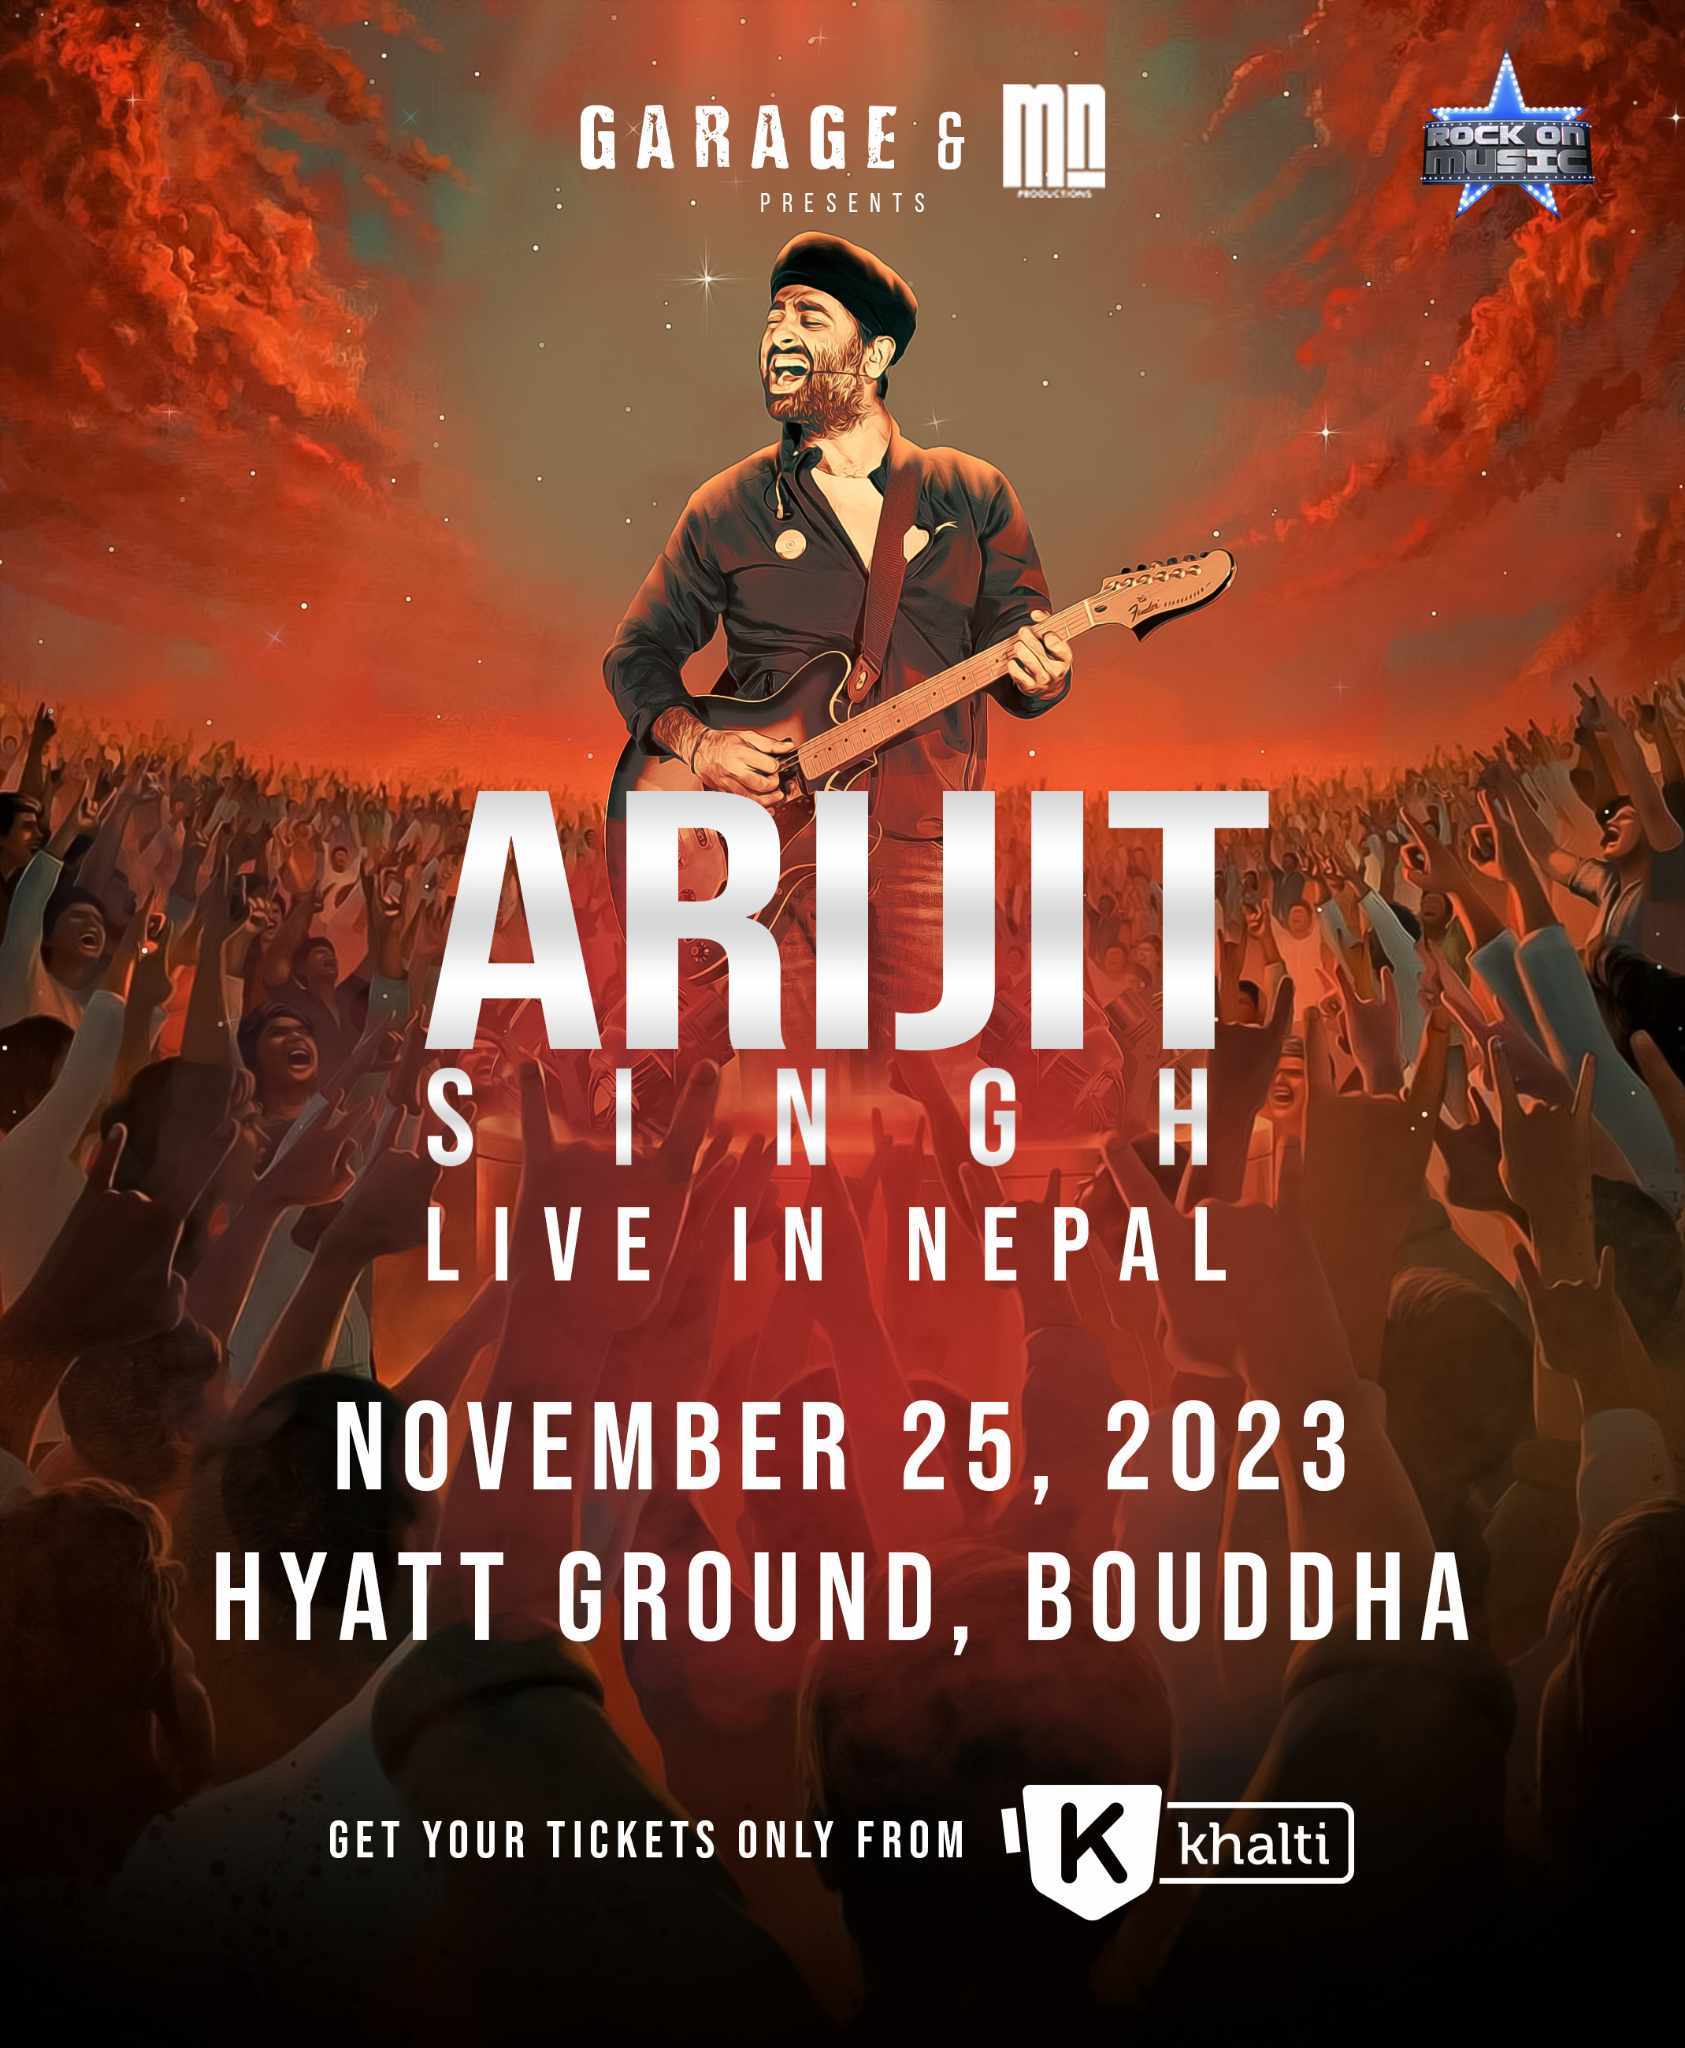 Arijit Singh performing Live in Nepal !